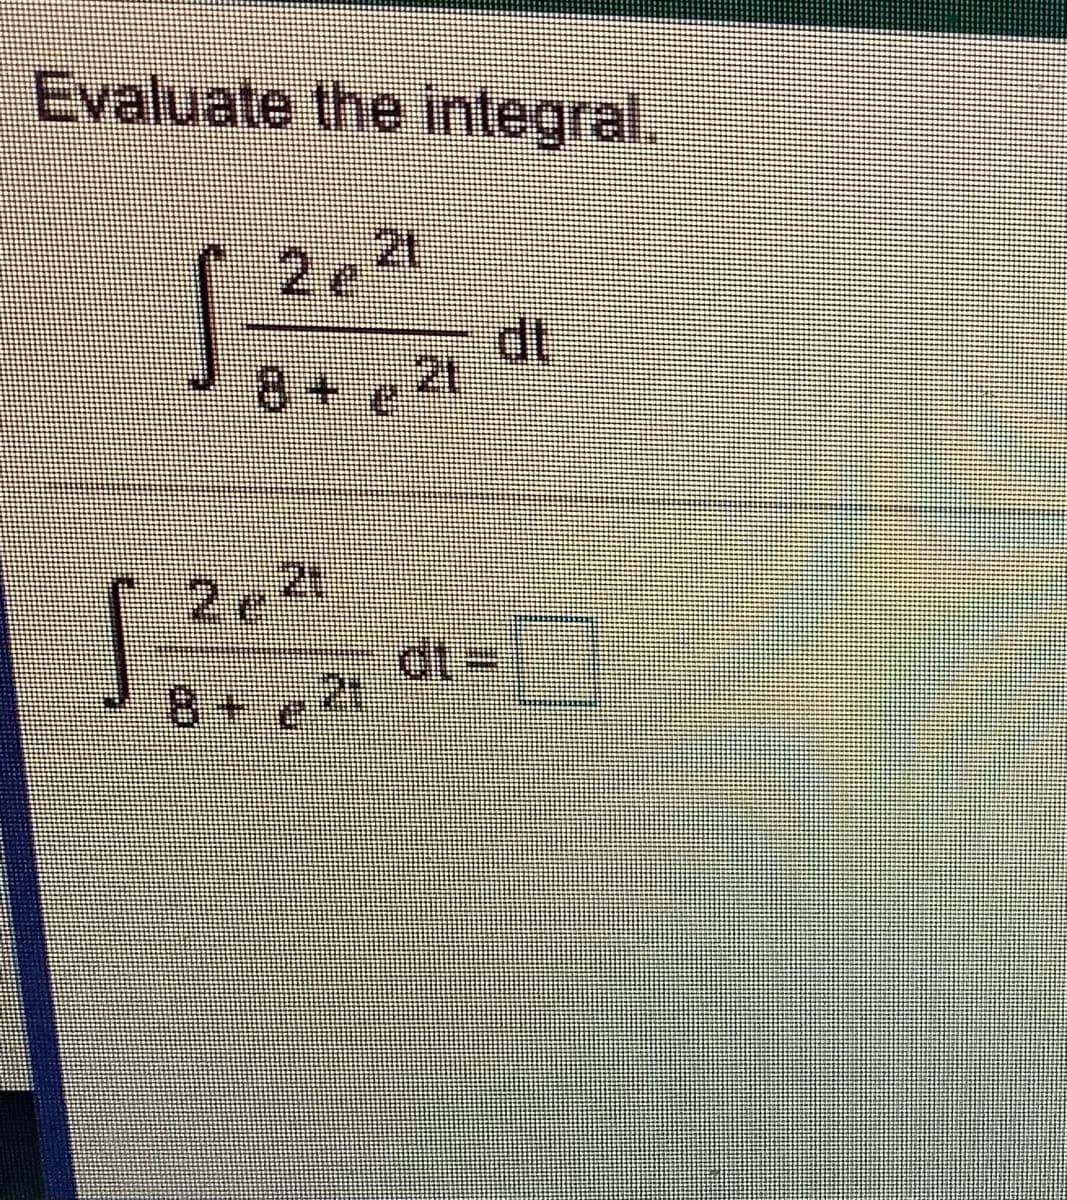 Evaluate the integral.
2e²
dt
21
8+e
dt%3D
